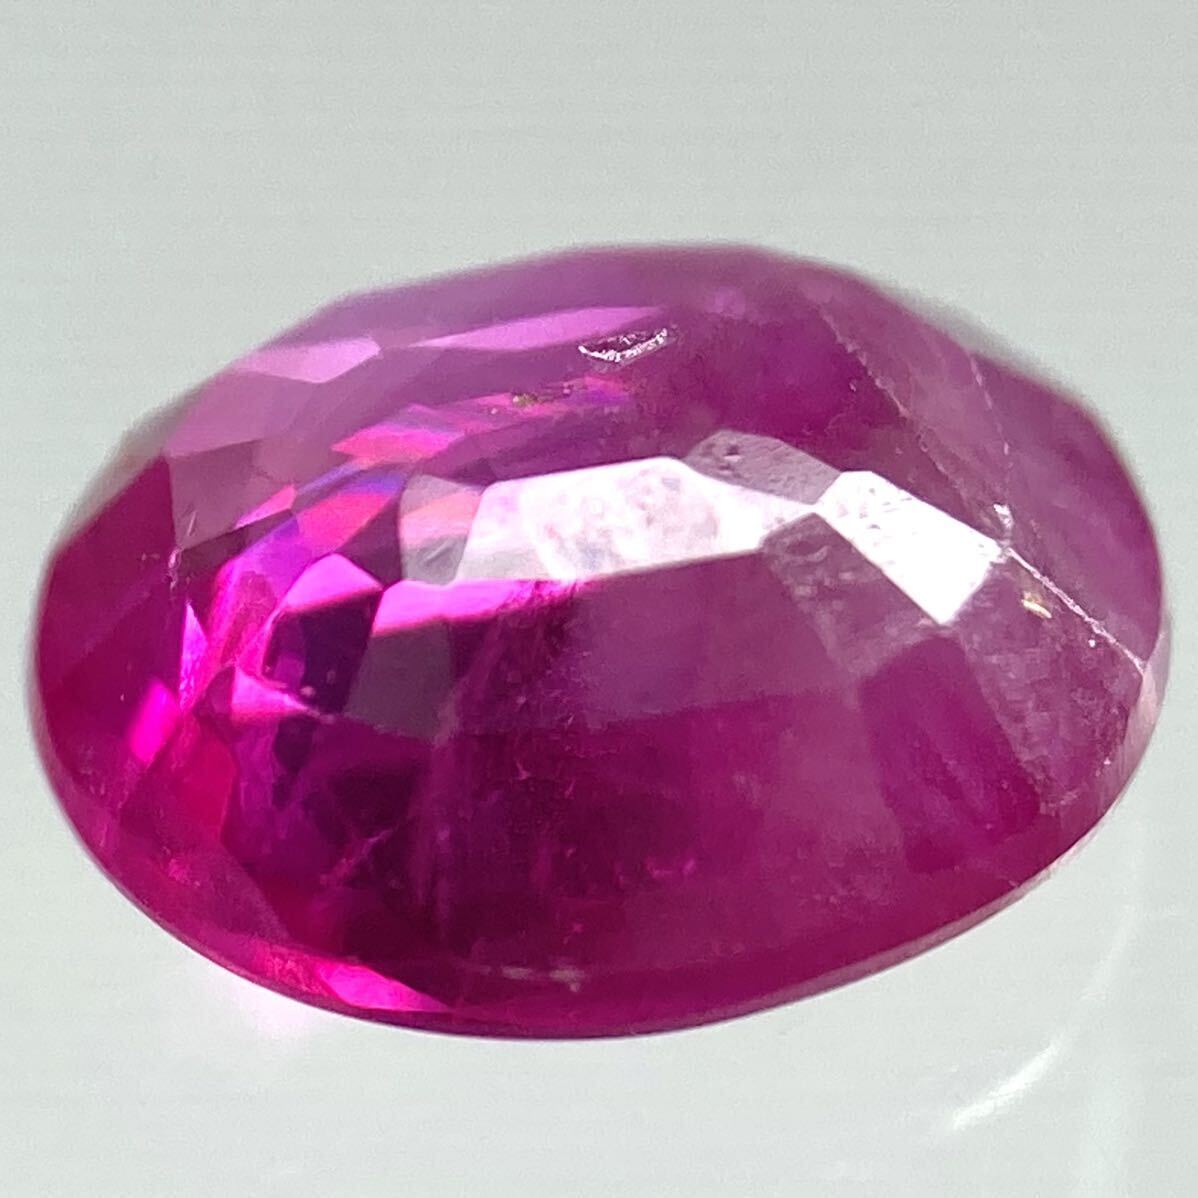 〔 природный   рубин  0.727ct〕a  около 5.97×4.94mm ... ... камень  corundum ... случайный   RUBY  драгоценный камень   ... ...DG0